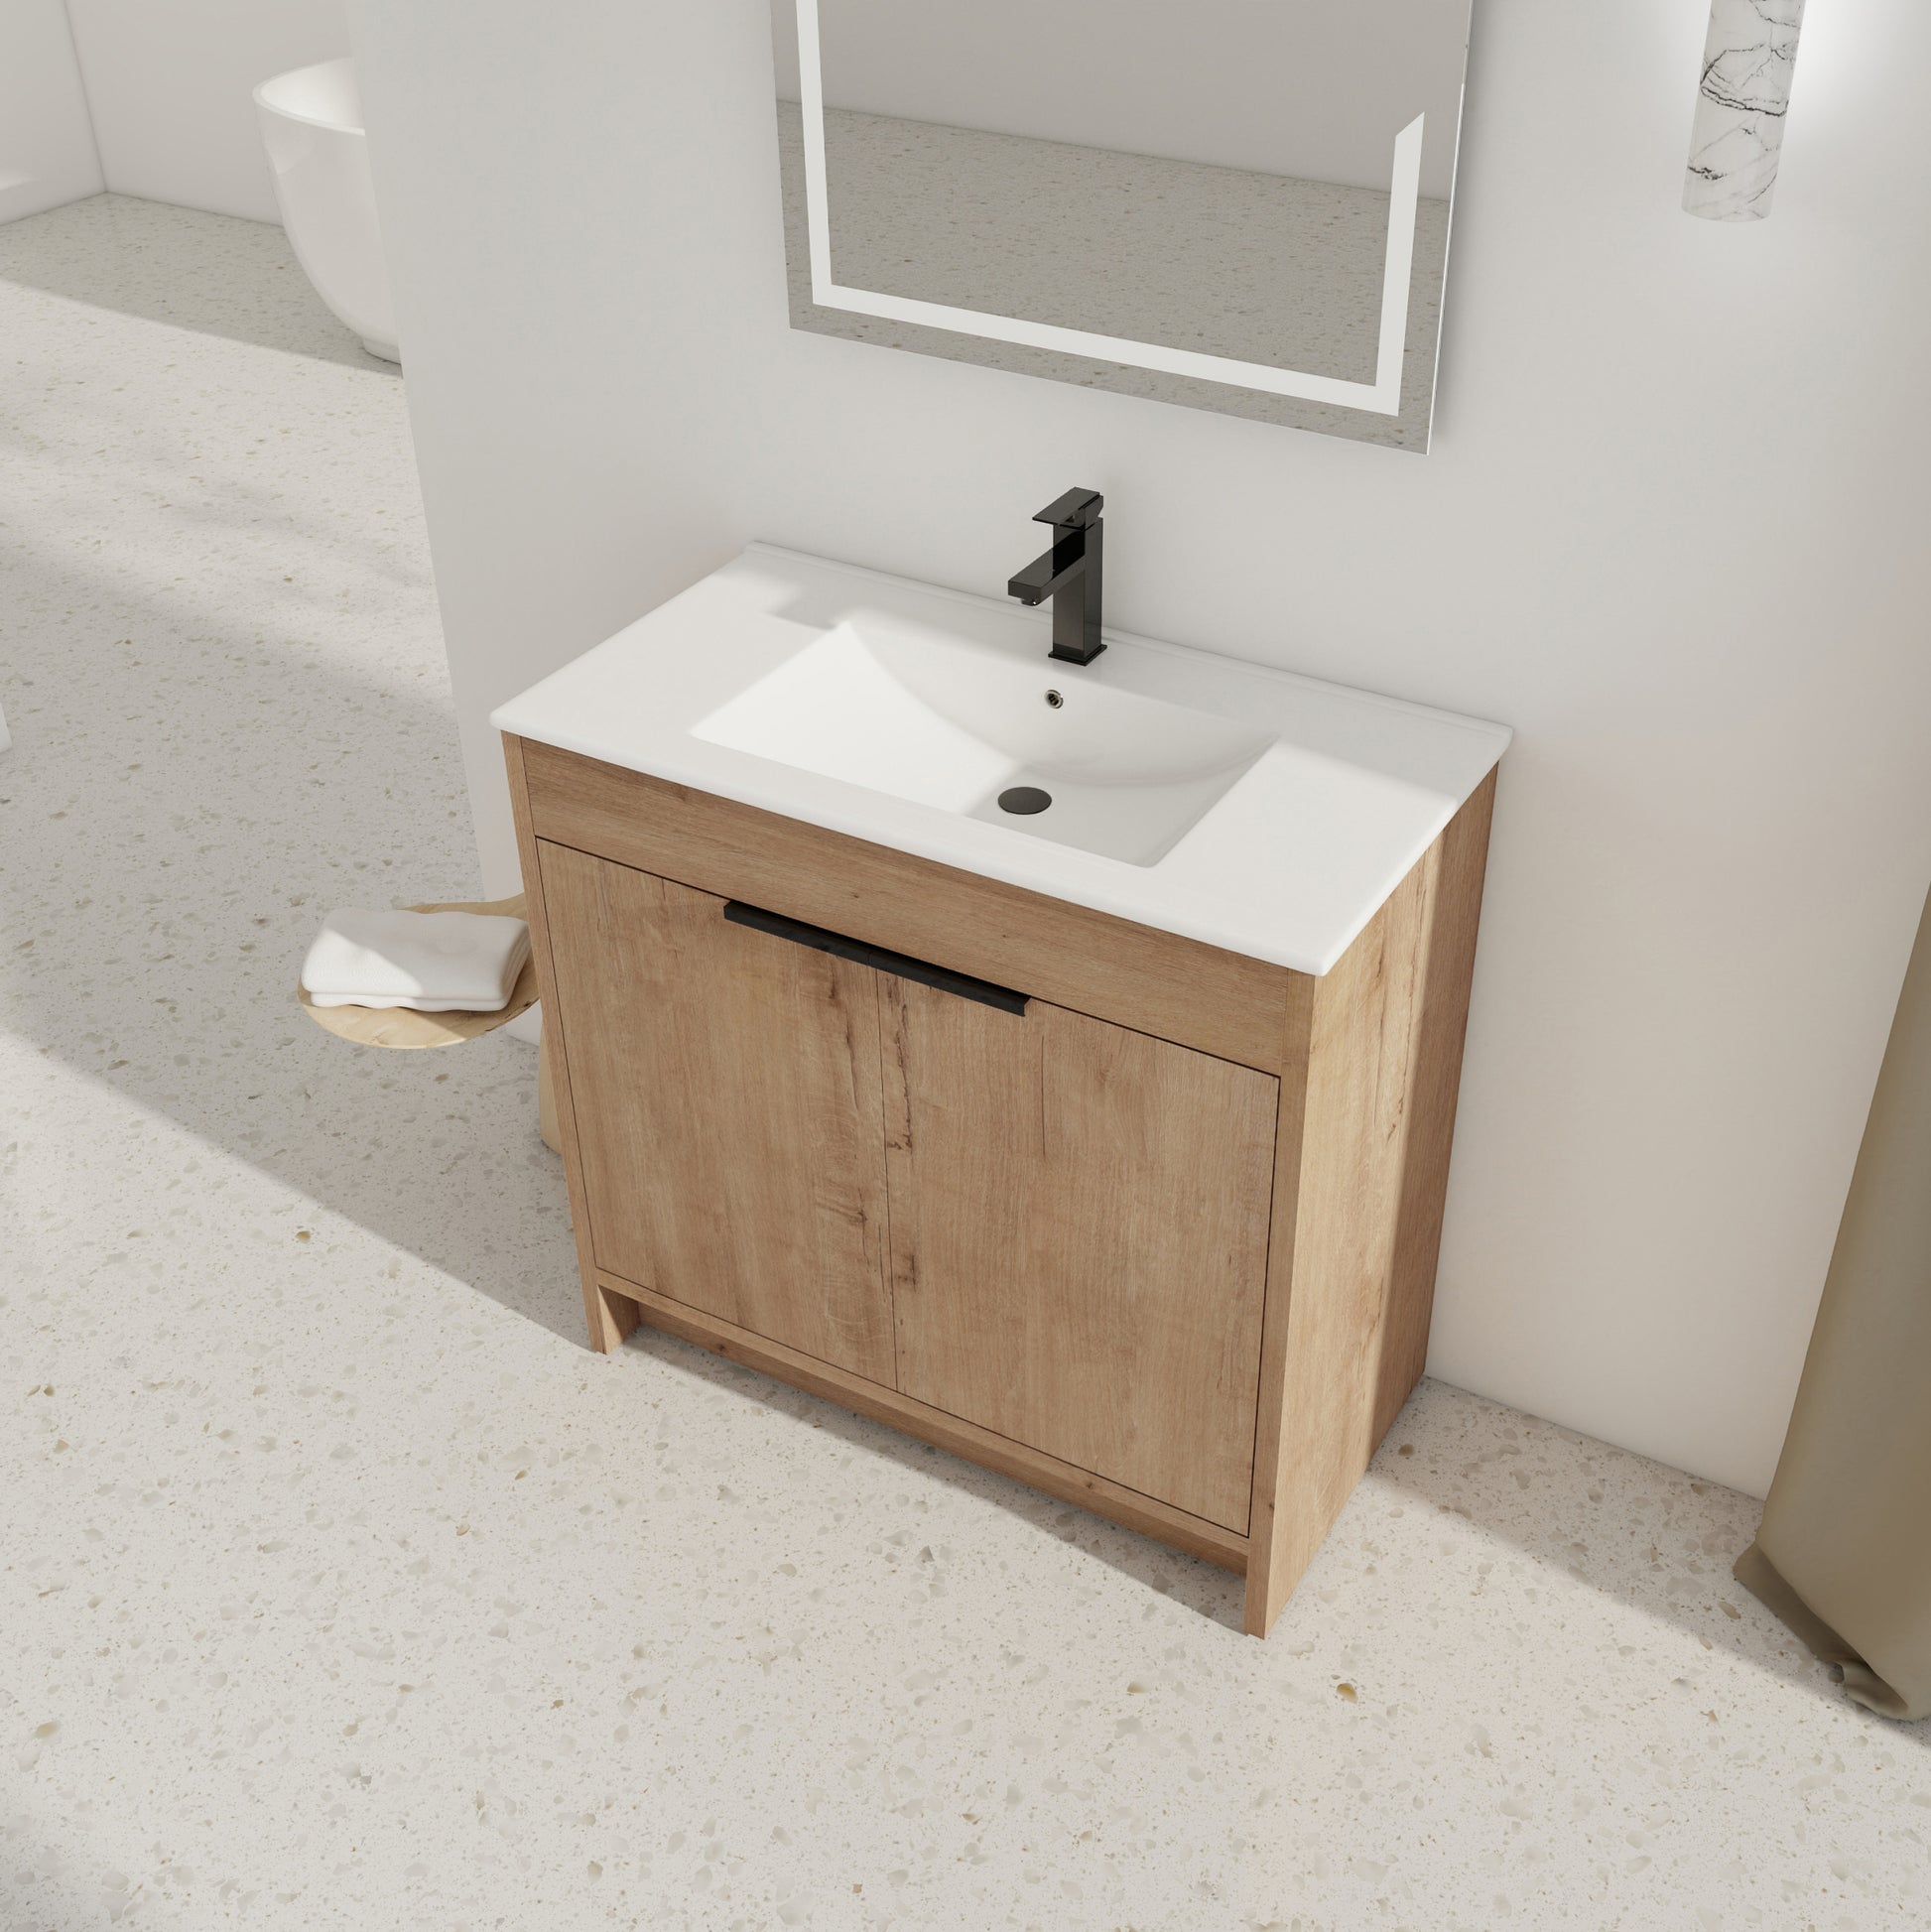 36" Freestanding Bathroom Vanity with White Ceramic imitative